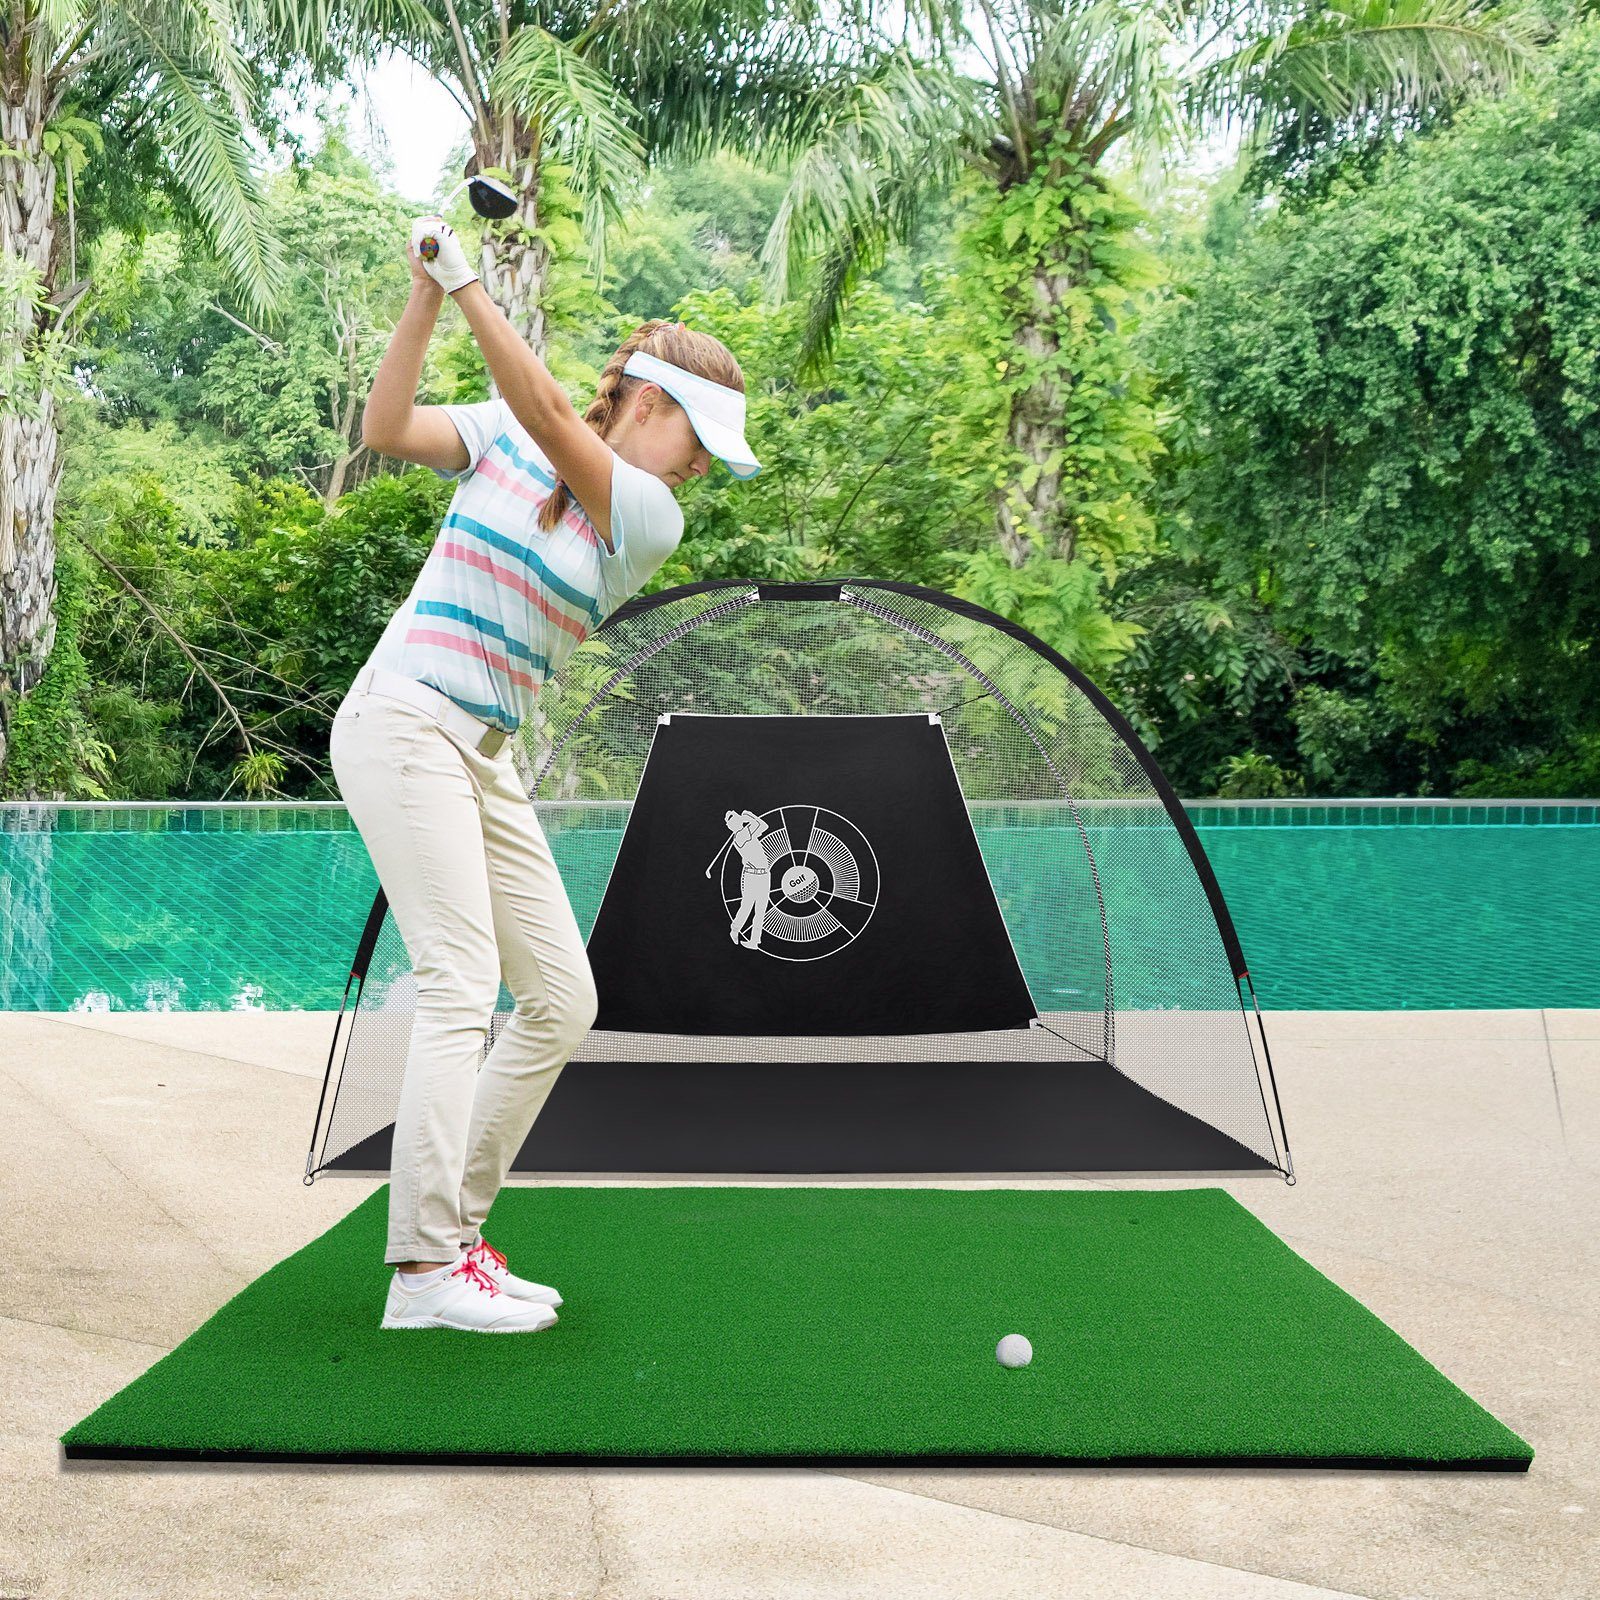 COSTWAY Golf-Abschlagmatte Golfmatte, 3 mit 150x100cm, Gummi-Tees